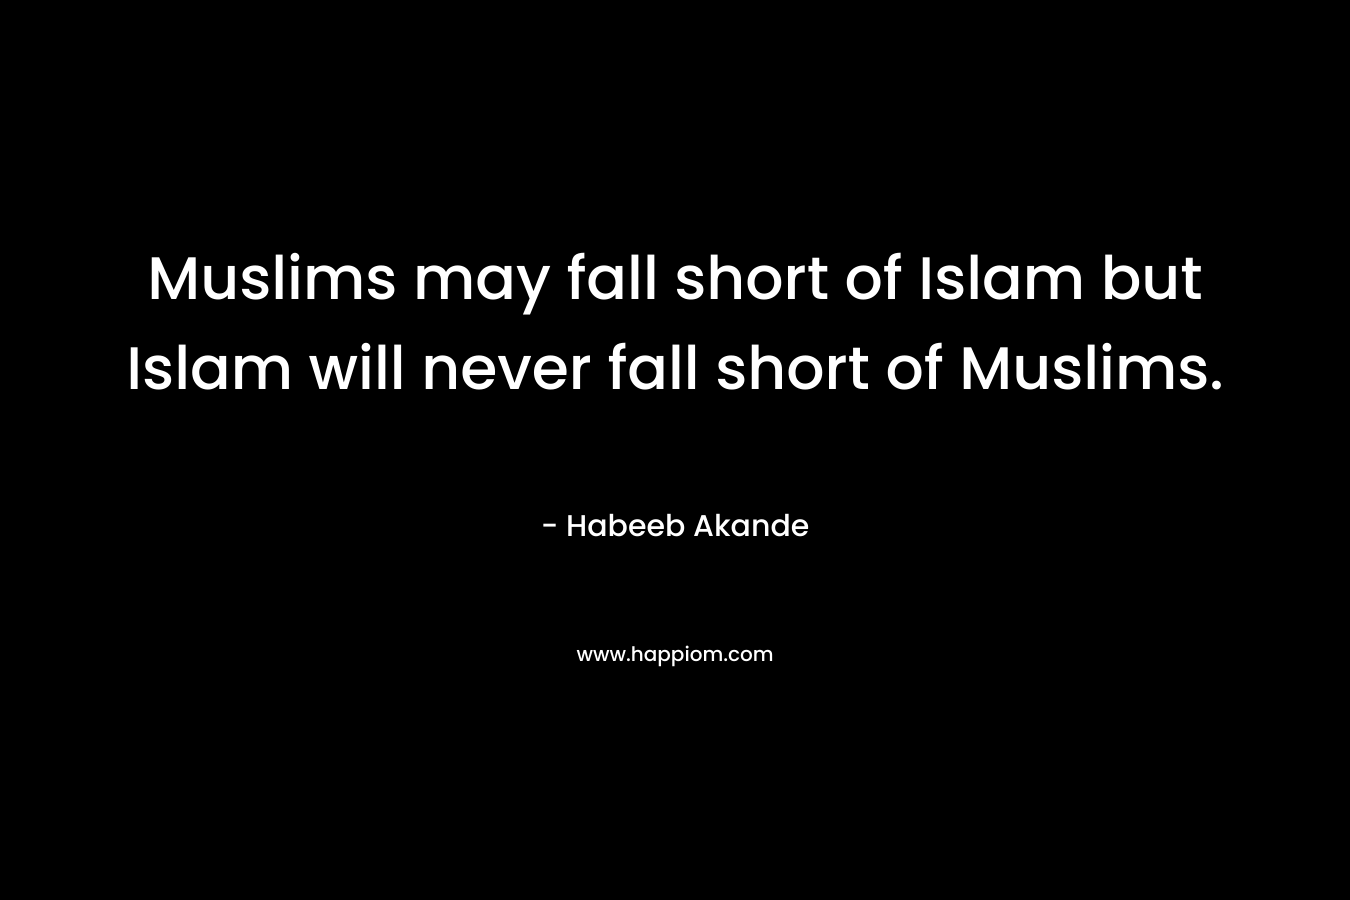 Muslims may fall short of Islam but Islam will never fall short of Muslims.